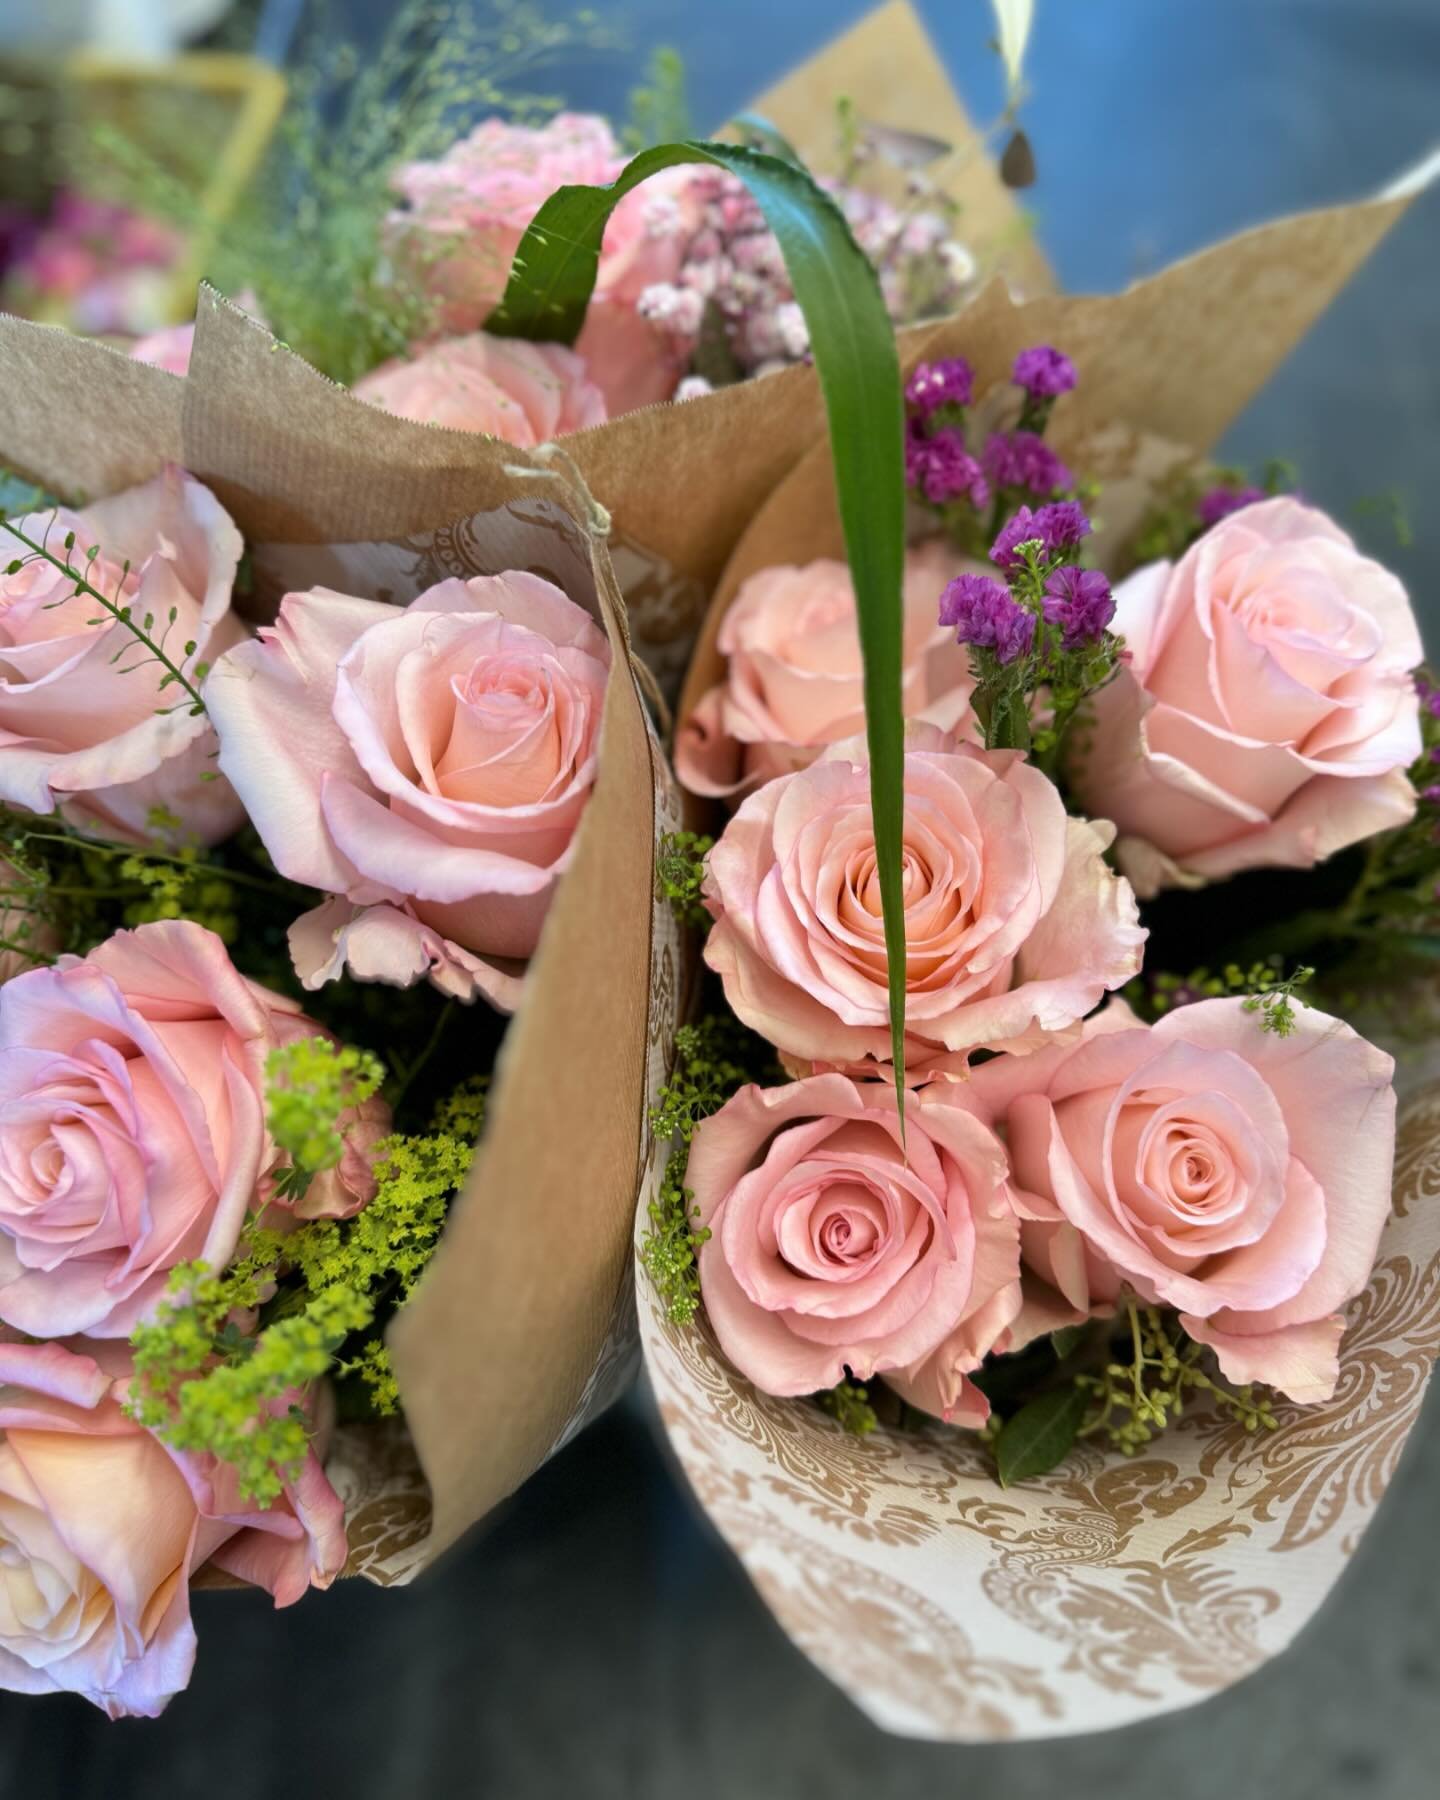 Am Sonntag ist Muttertag! 💓💓💓 Wir haben viele wundersch&ouml;ne Bouquets f&uuml;r dich bereit und freuen uns auf deinen Besuch!